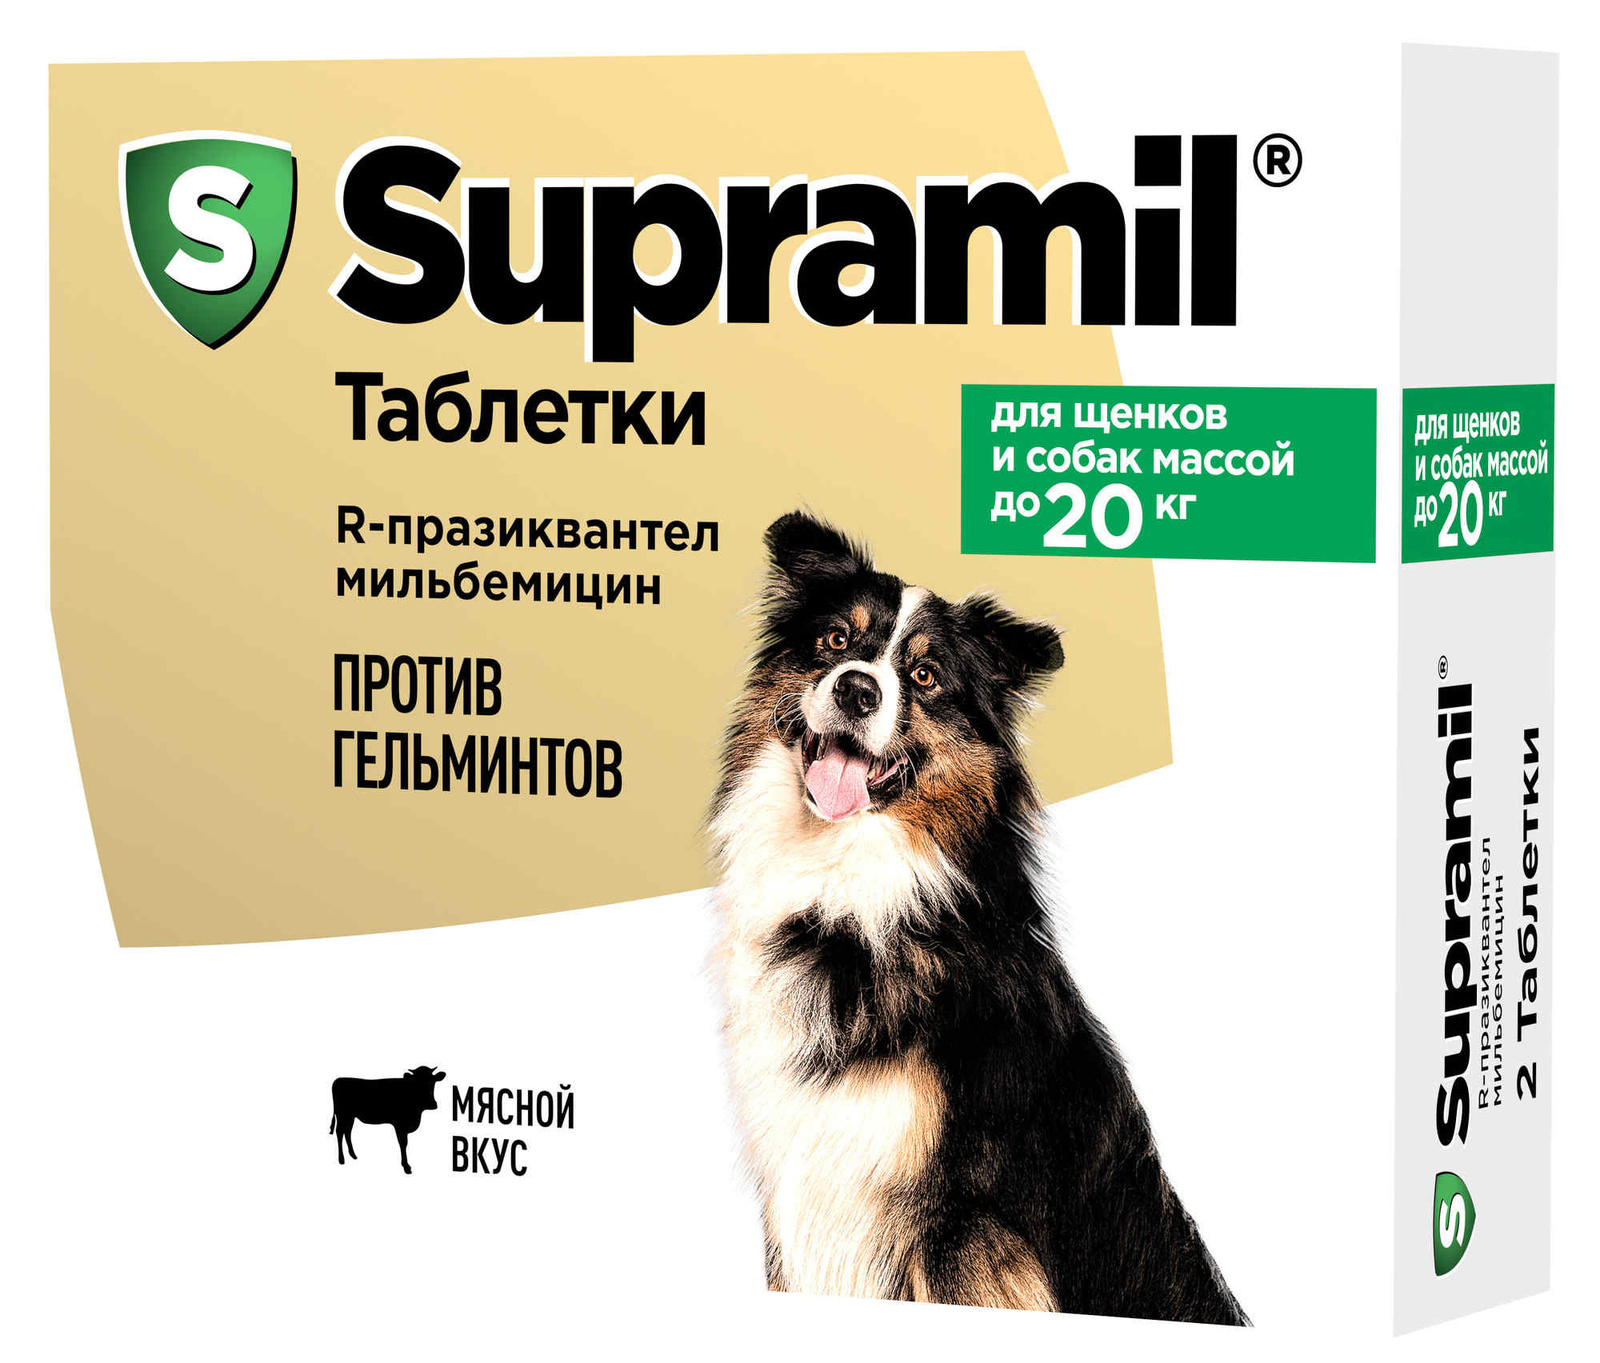 Астрафарм Астрафарм антигельминтный препарат Supramil для щенков и собак массой до 20 кг, таблетки (2 таб.) астрафарм supramil таблетки для щенков и собак массой до 20 кг 2 таб